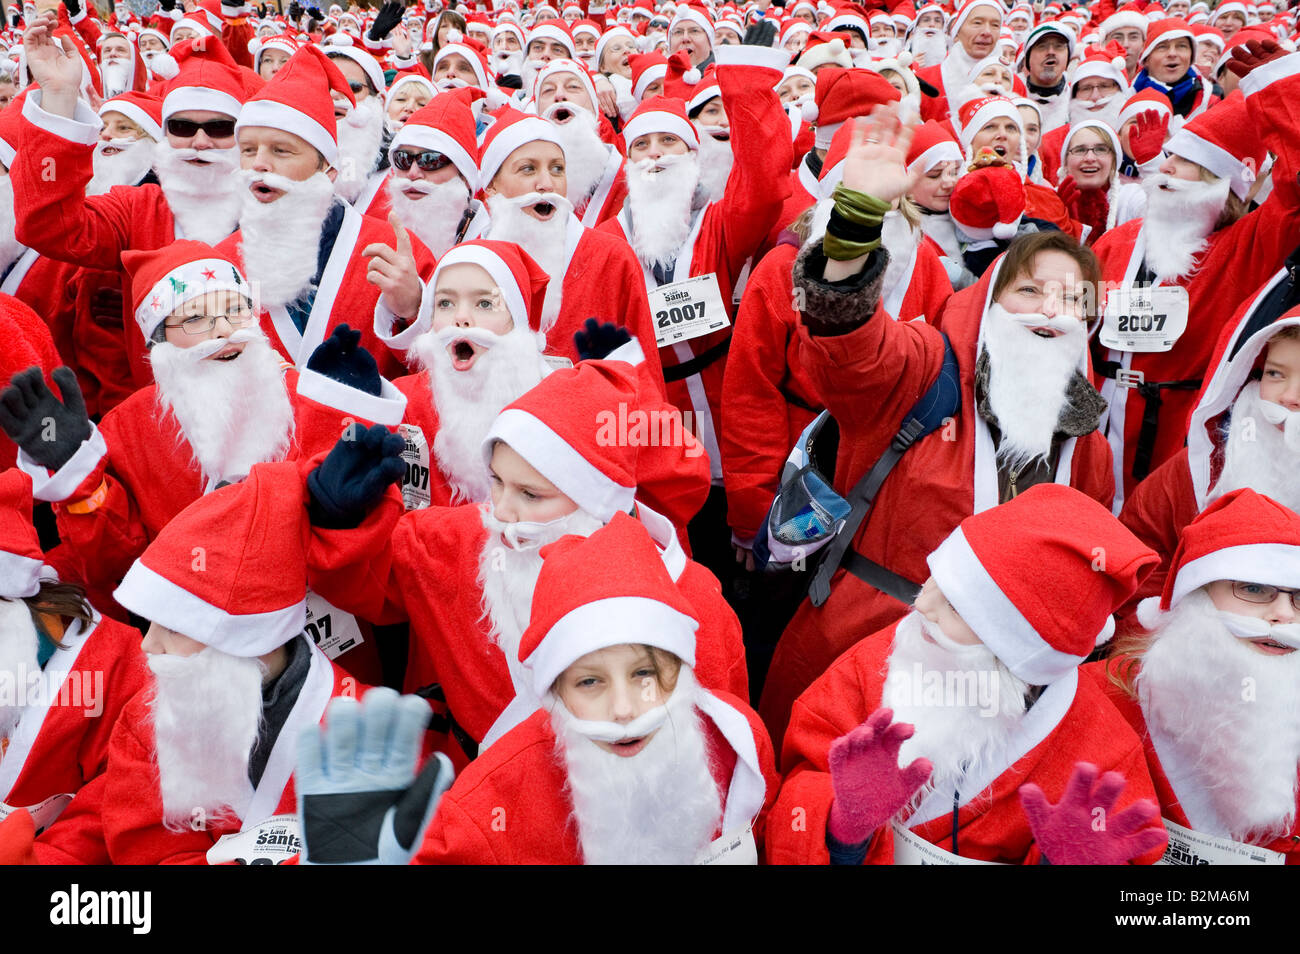 Lauf Santa Lauf (Lauf, Santa, Lauf): Versuch, einen Weltrekord für das größte Weihnachtsmann-Rennen am 16. Dezember 2007 in Hamb Stockfoto